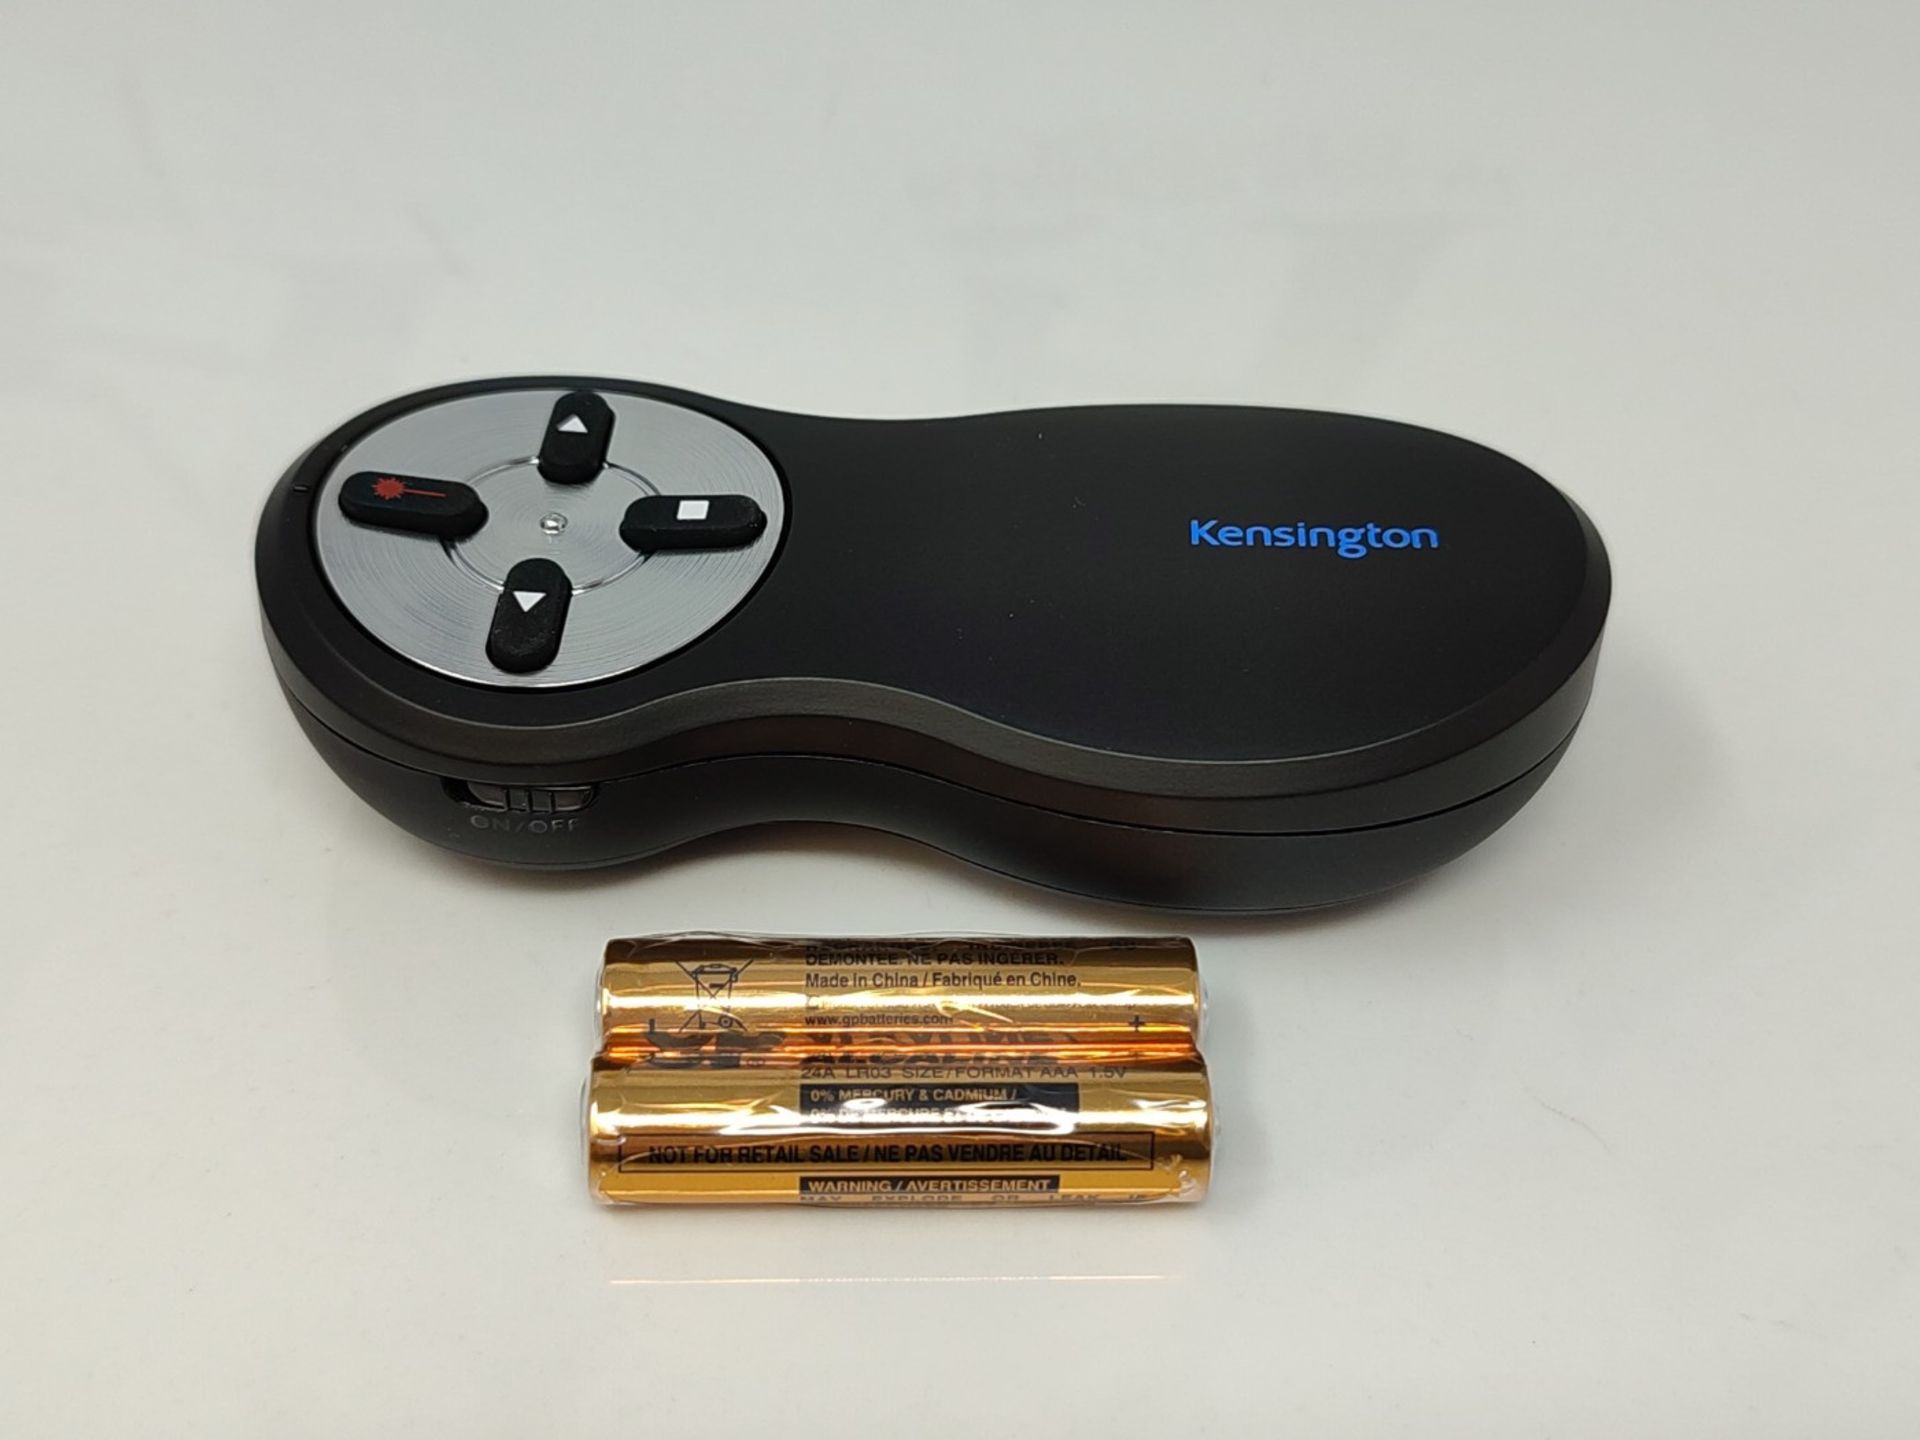 Kensington Wireless USB Powerpoint Presentation Clicker with Red Laser Pointer, Compat - Bild 3 aus 3